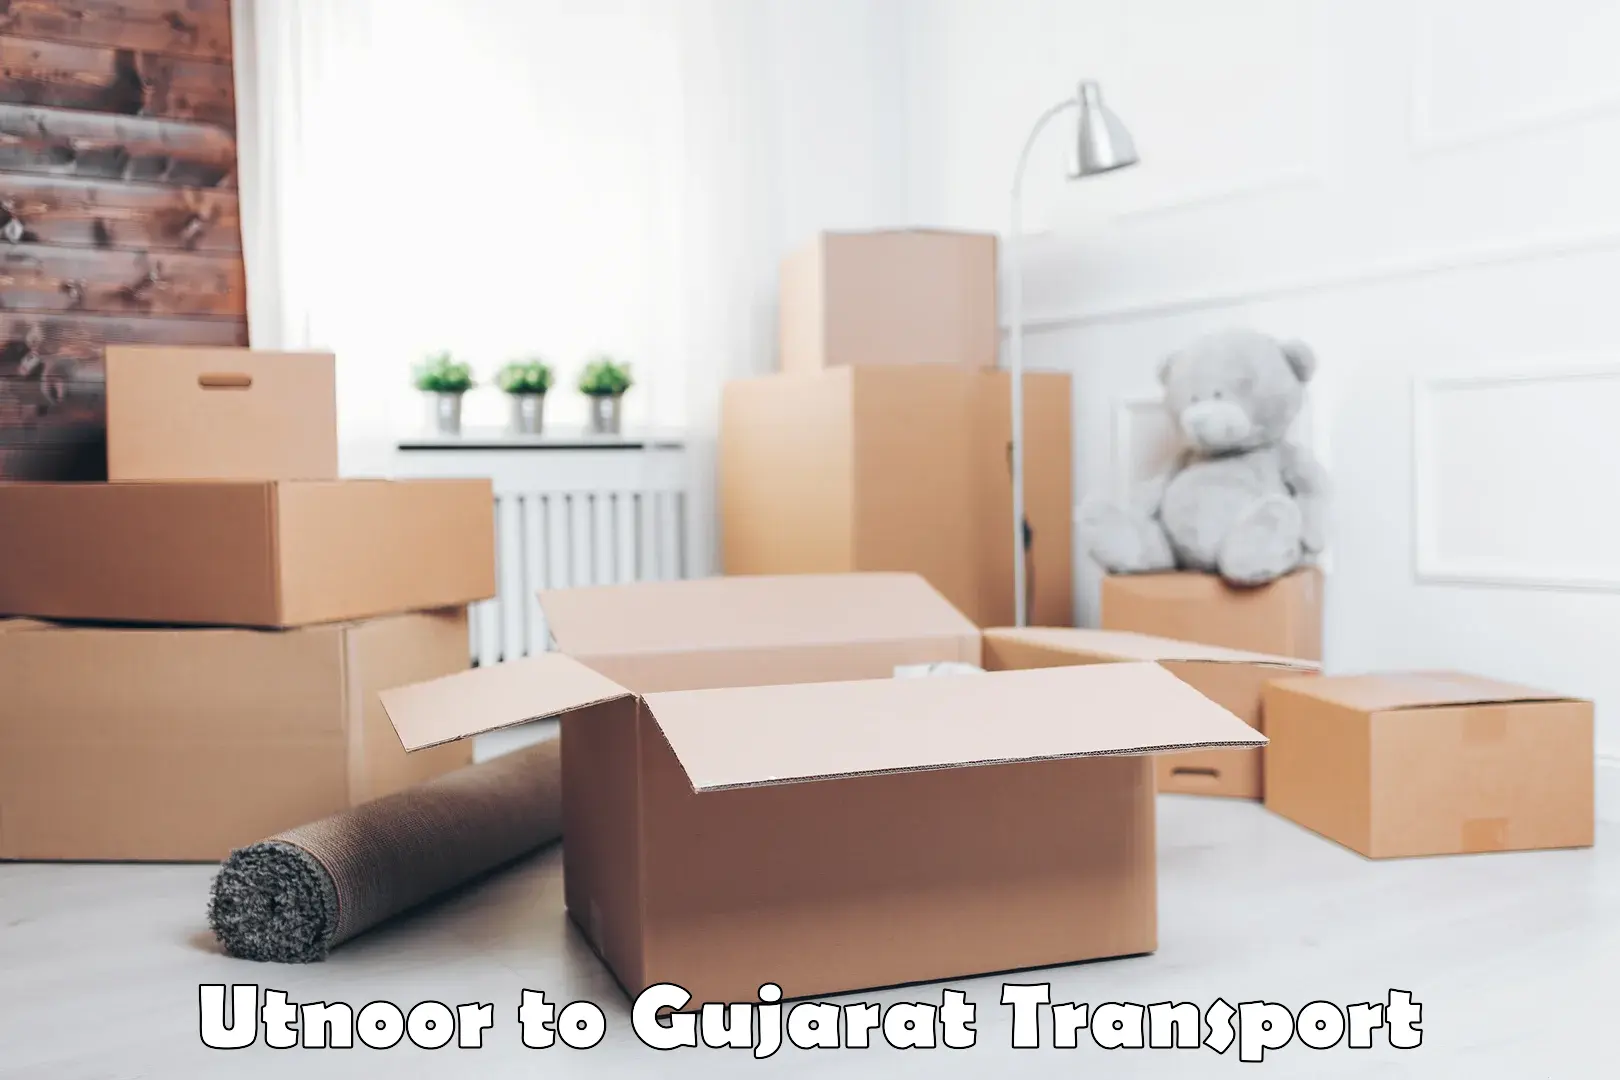 Scooty parcel Utnoor to Gujarat